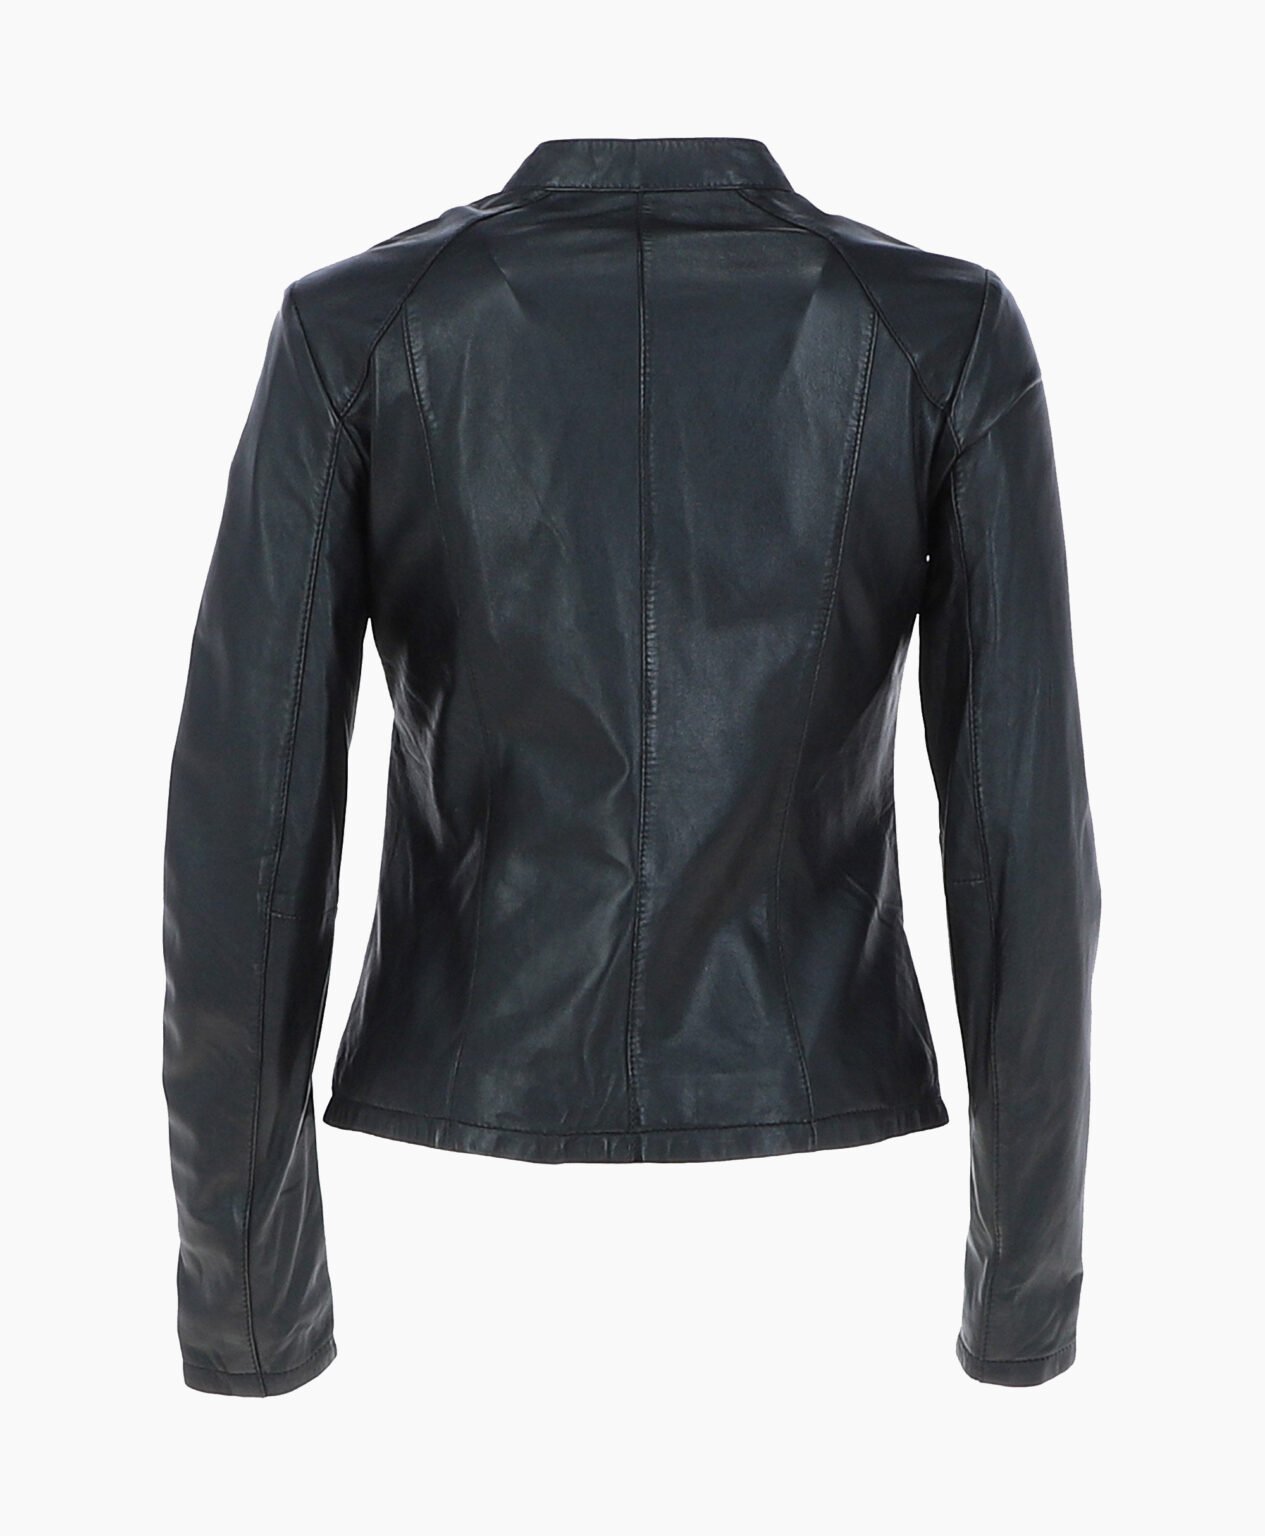 vogue-jacket-leather-biker-jacket-black-cicero-image202